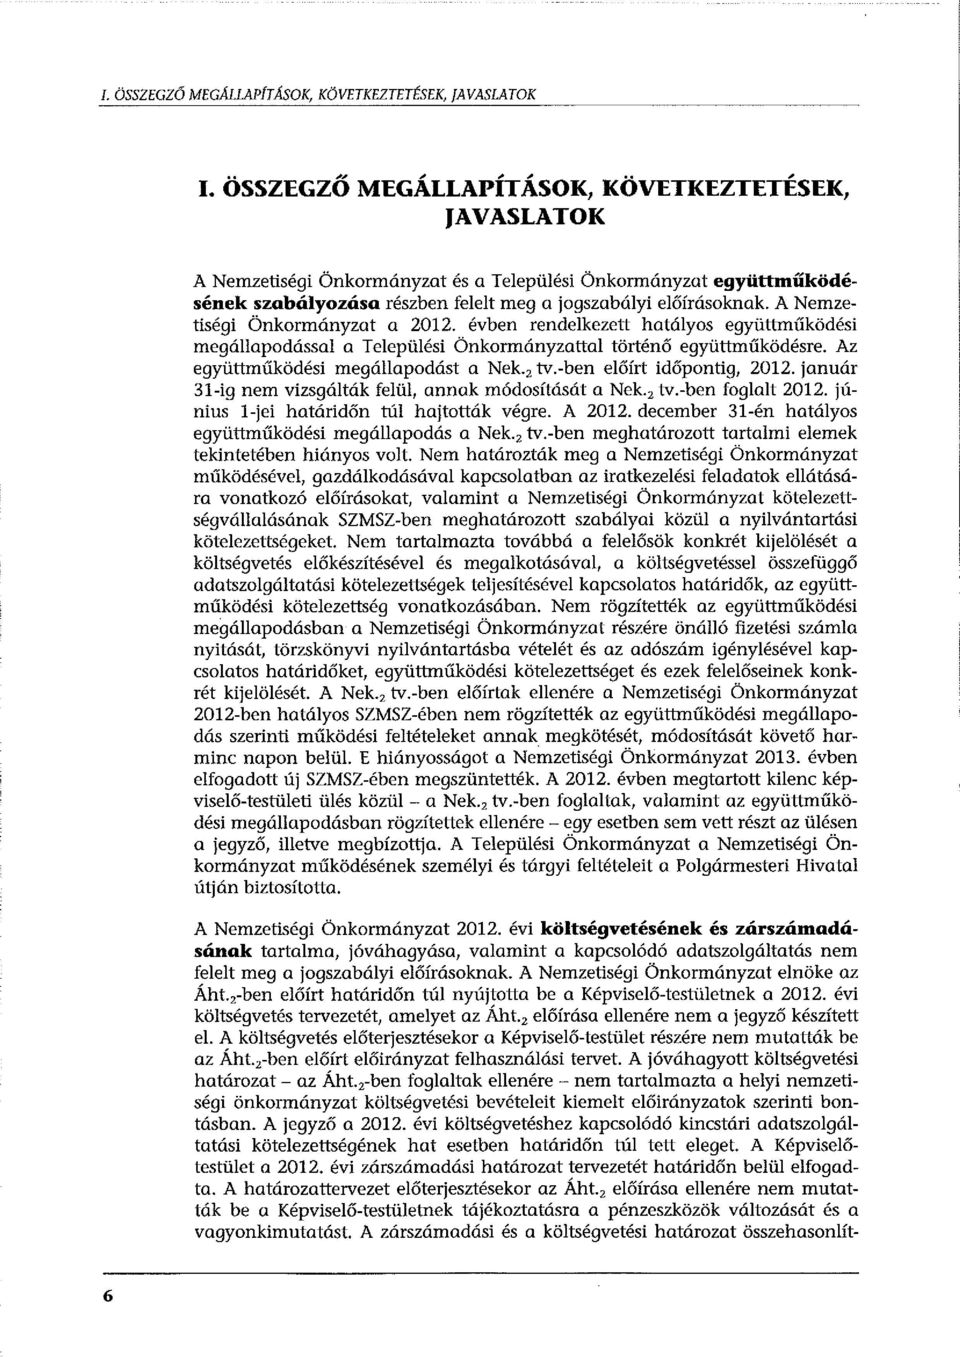 A Nemzetiségi Önkormányzat a 2012. évben rendelkezett hatályos együttműködési megállapodással a Települési Önkormányzattal történő együttműködésre. Az együttműködési megállapodást a Nek.2 tv.